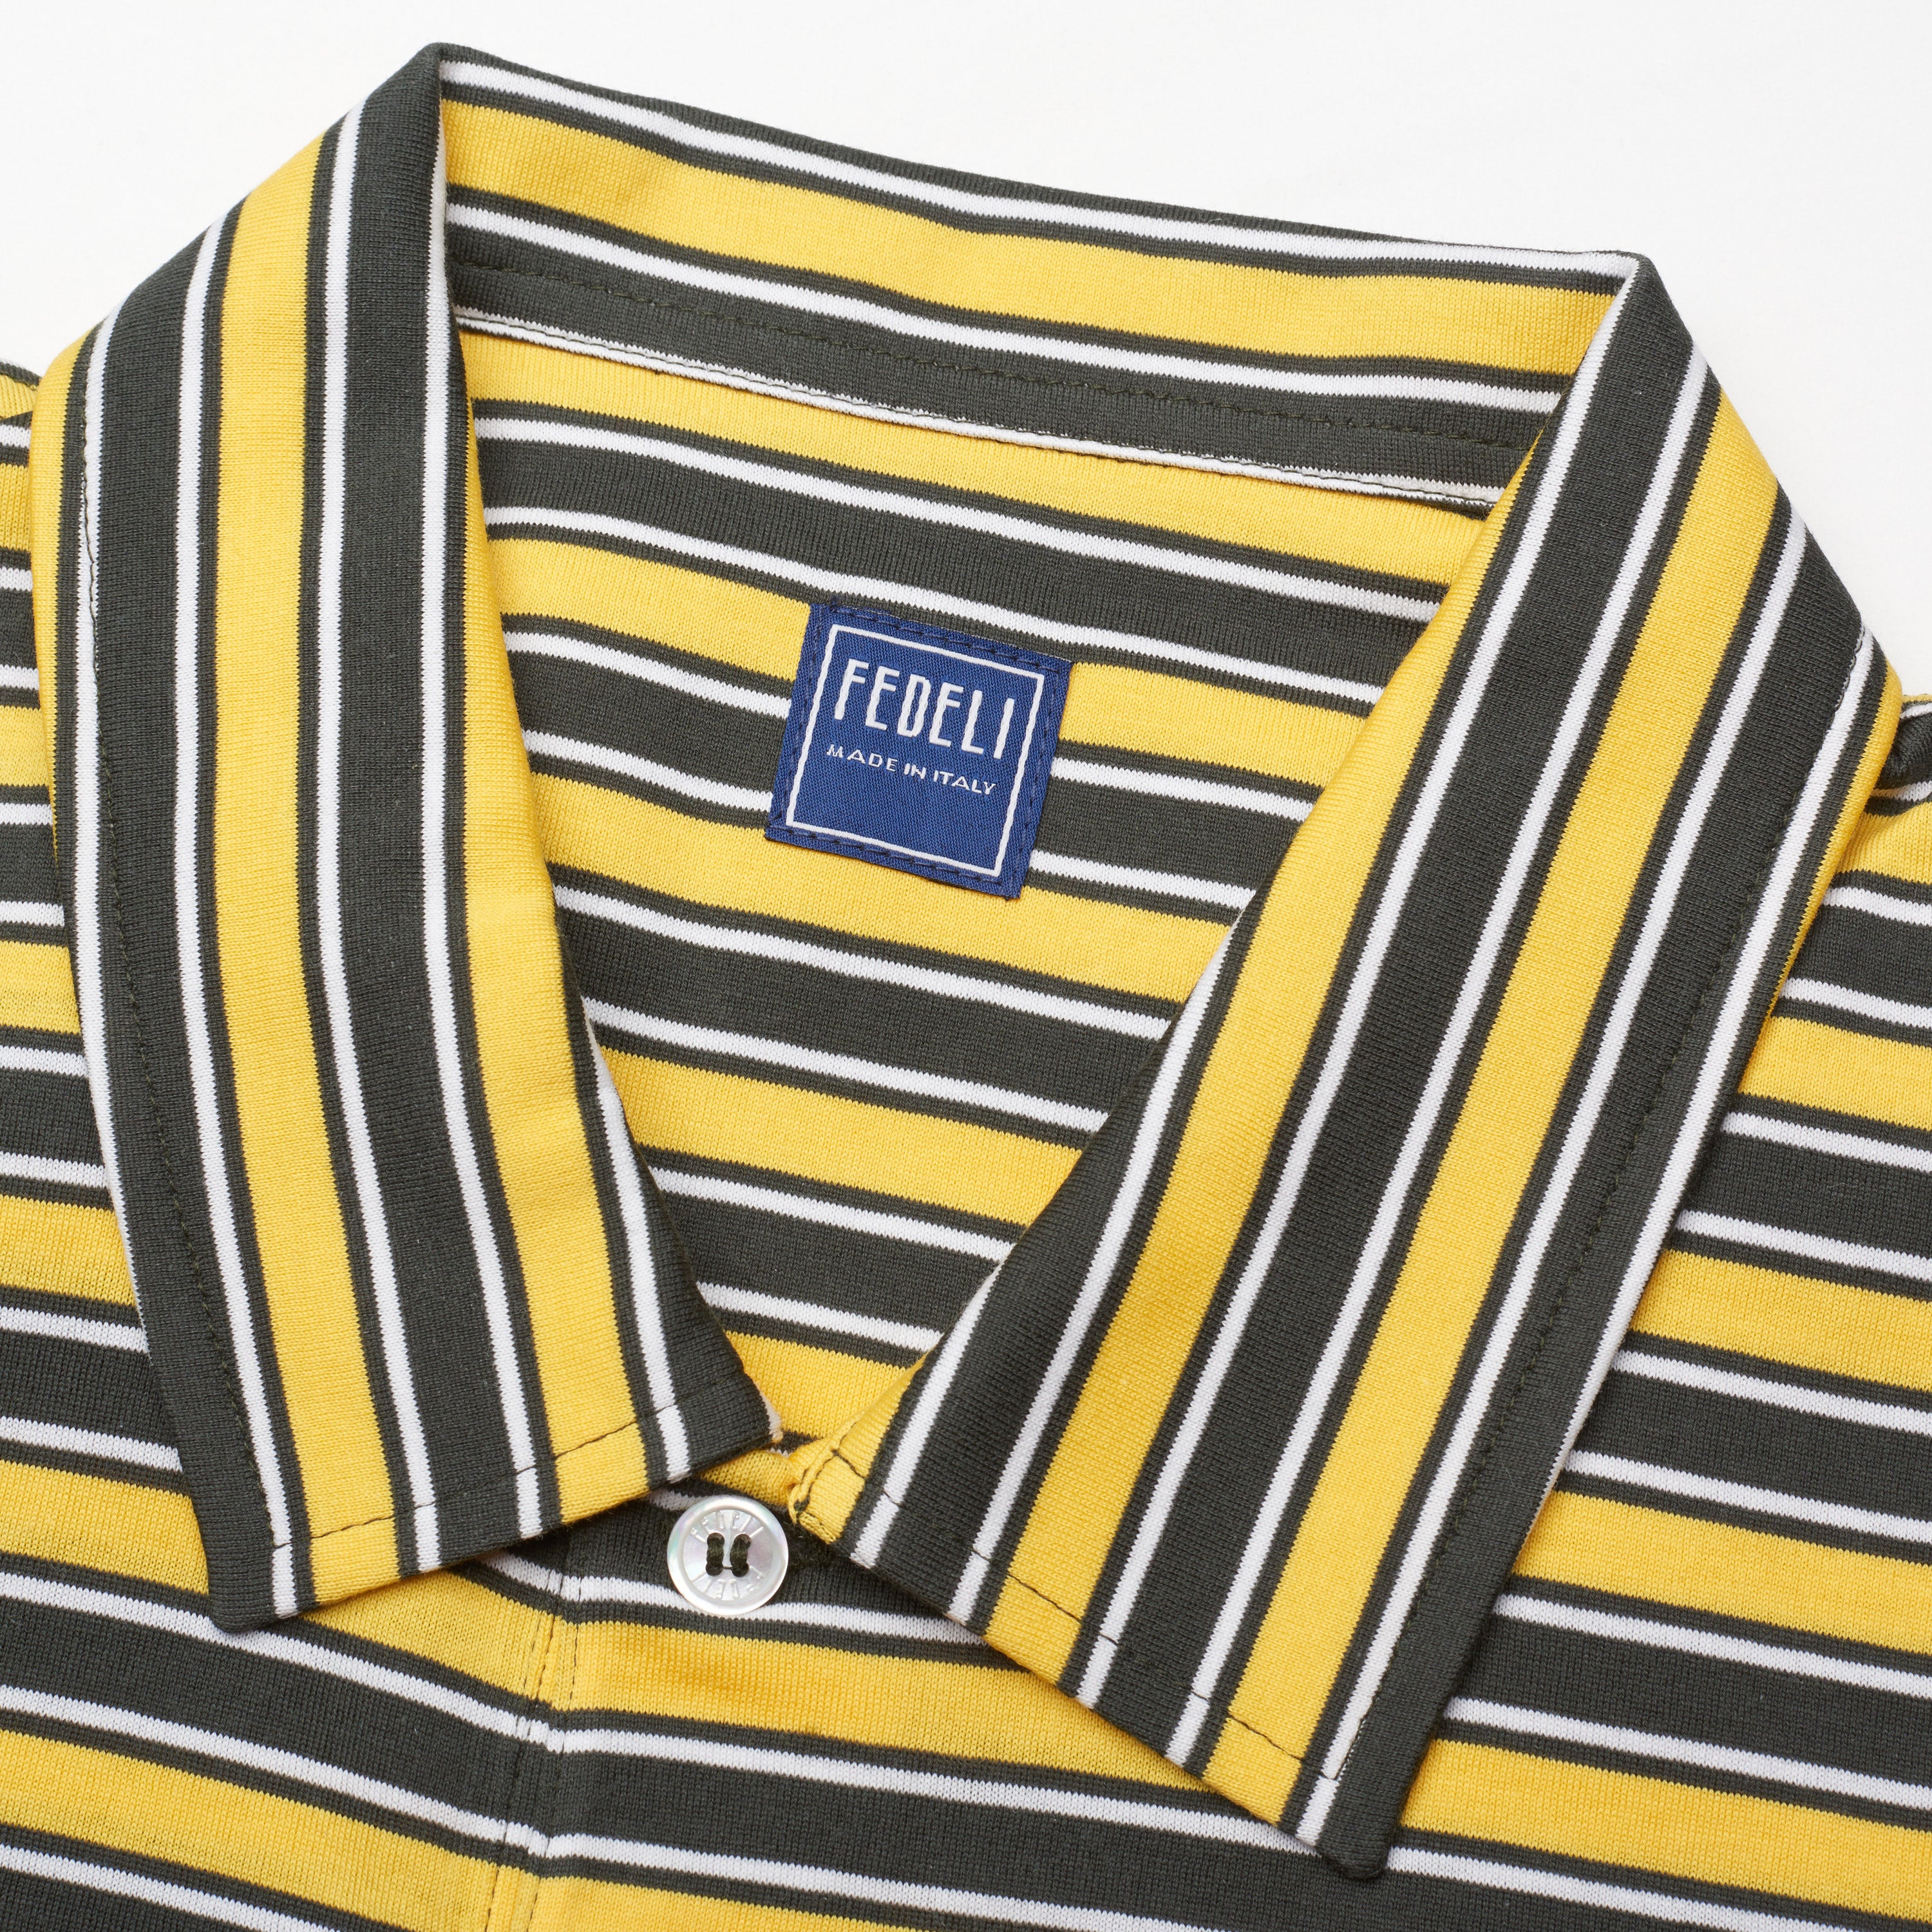 FEDELI "Florida" Black-Yellow-White Striped Cotton Jersey Polo Shirt NEW FEDELI